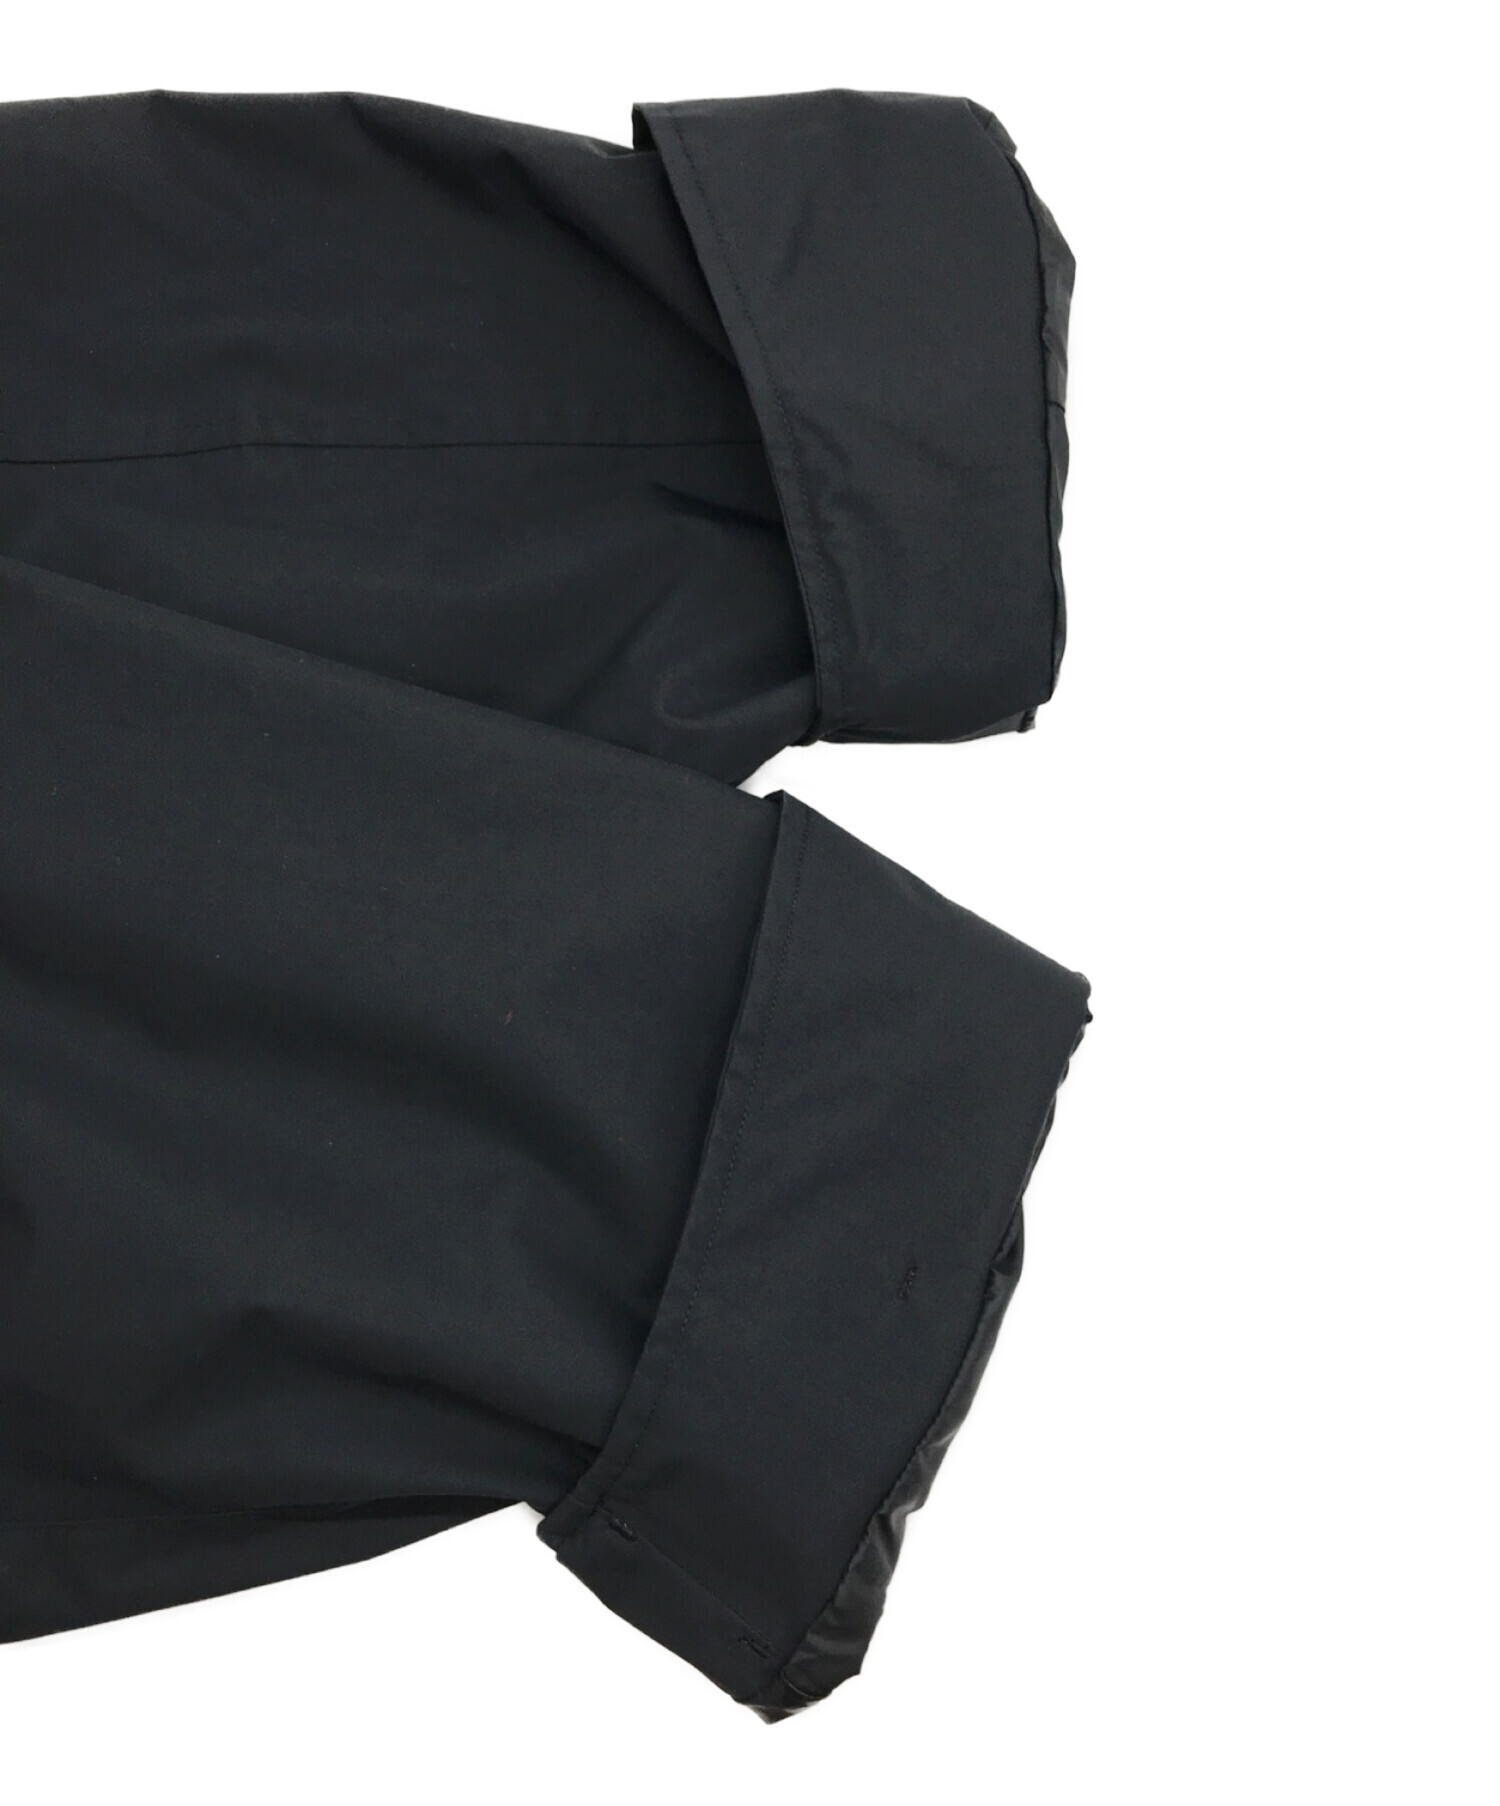 THE NORTH FACE (ザ ノース フェイス) WP Field Jacket ウォータープルーフフィールドジャケット ブラック サイズ:XL